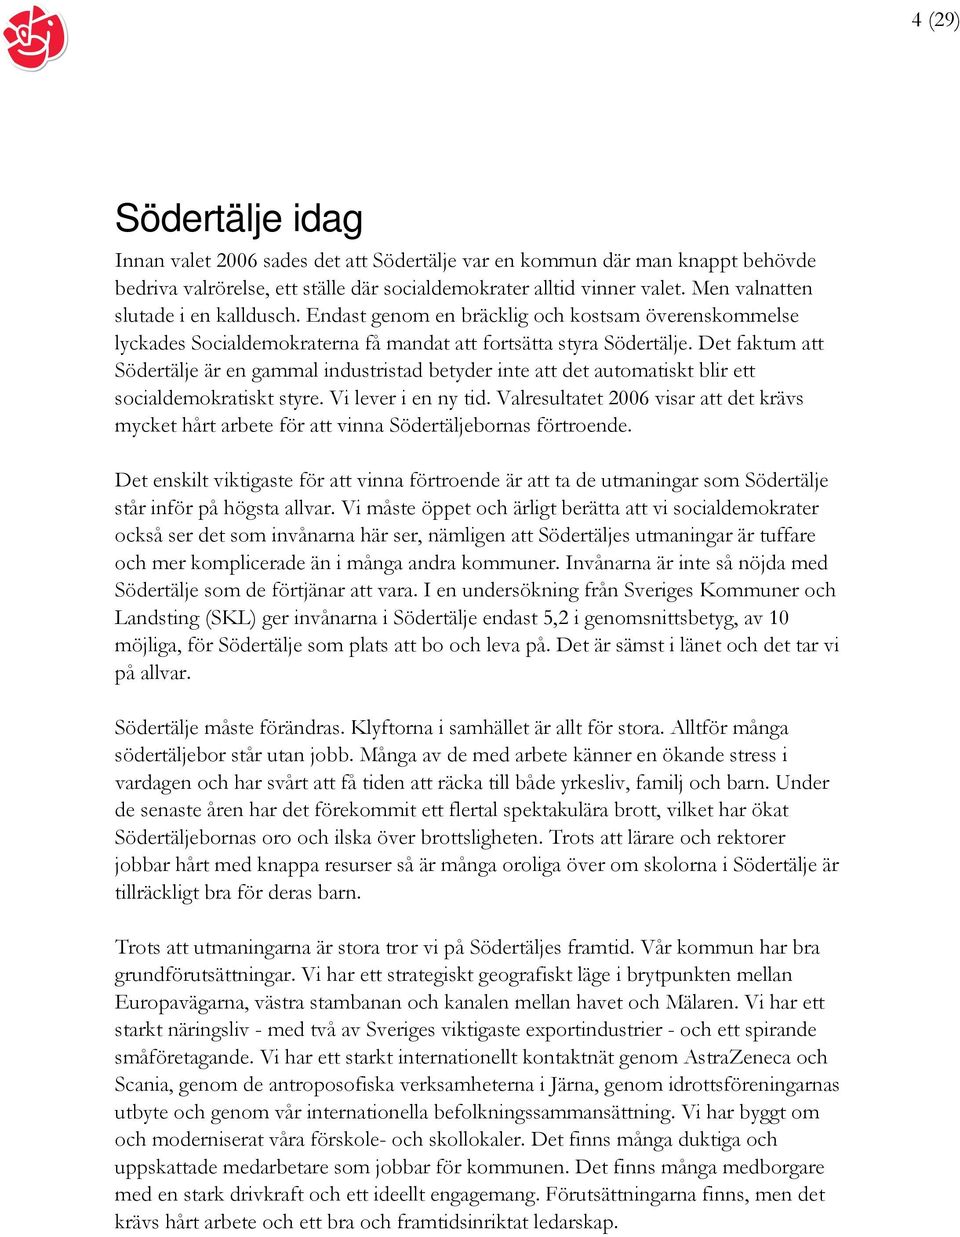 Det faktum att Södertälje är en gammal industristad betyder inte att det automatiskt blir ett socialdemokratiskt styre. Vi lever i en ny tid.